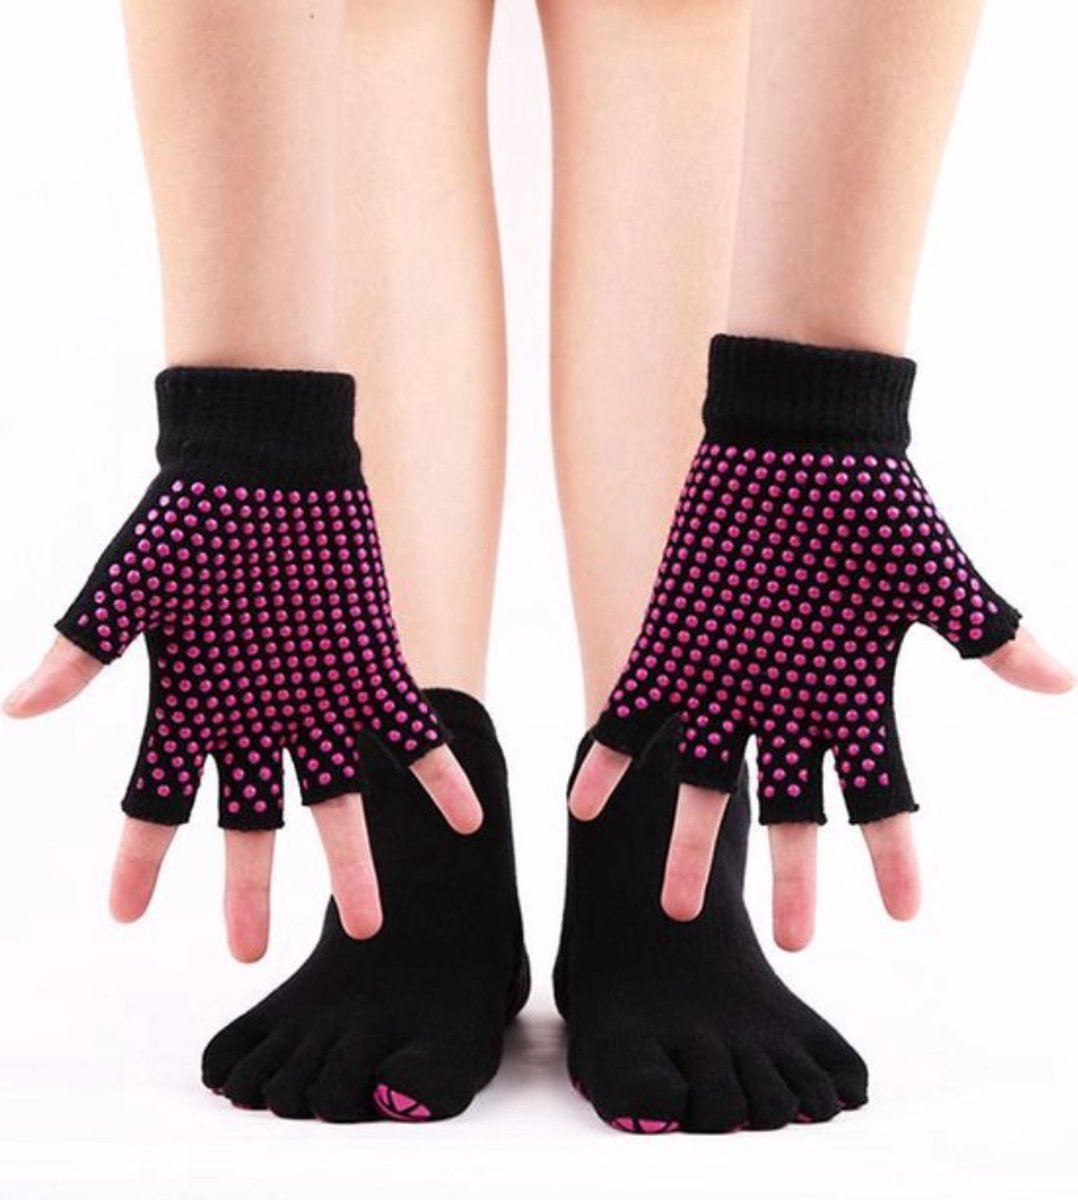 New Age Devi Yoga sokken en handschoenen Set - Zwart Roze - Antislip - One size - New Age Devi